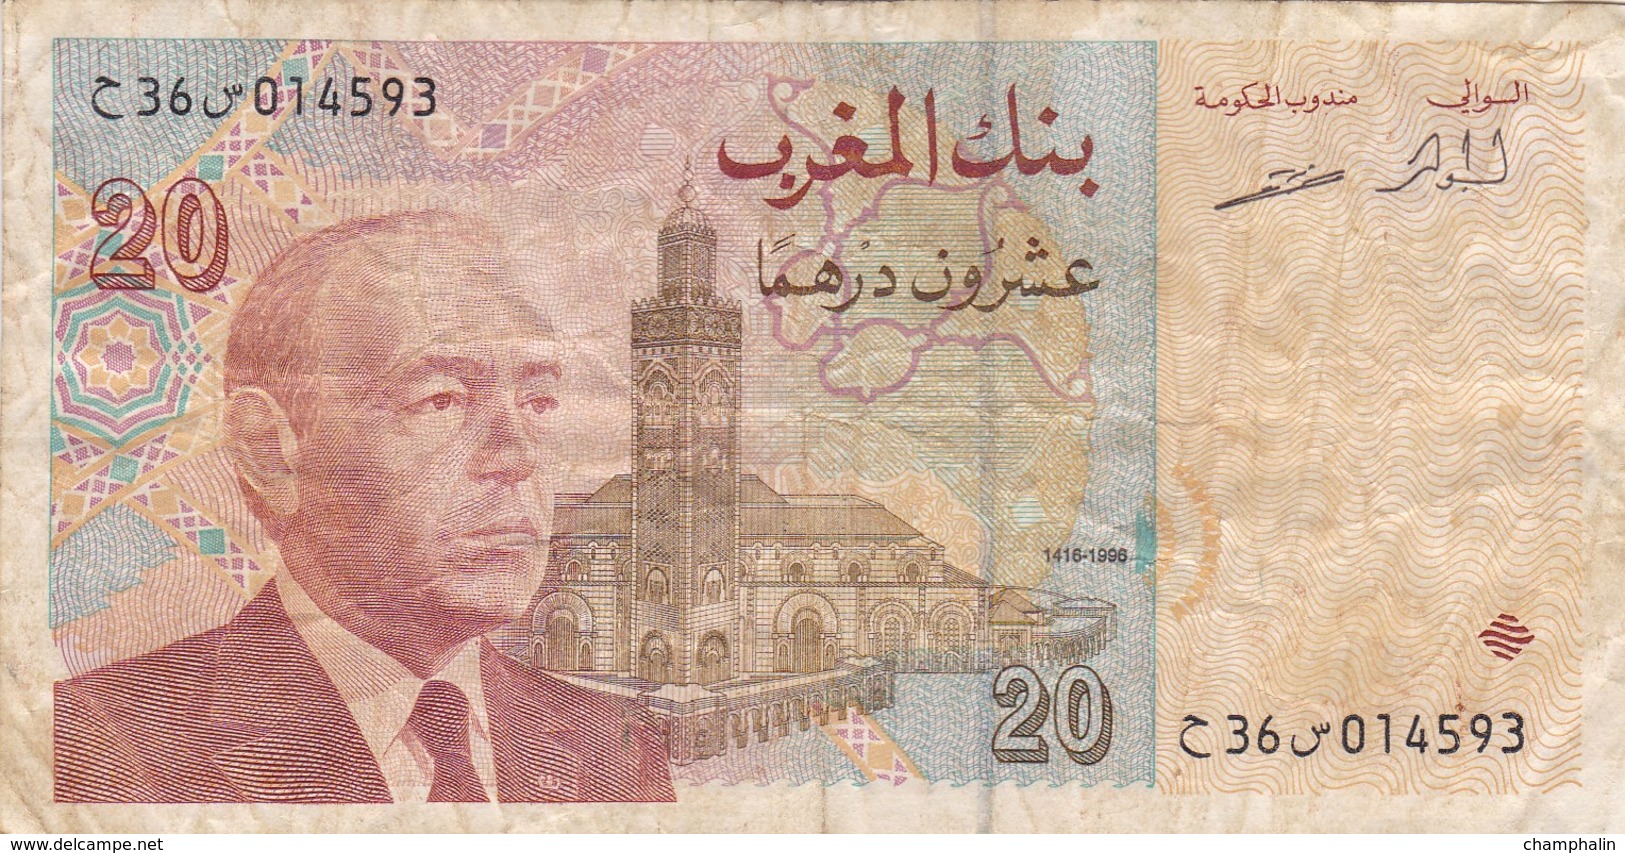 Maroc - Billet De 20 Dirhams - 1996 - Hassan II - Maroc